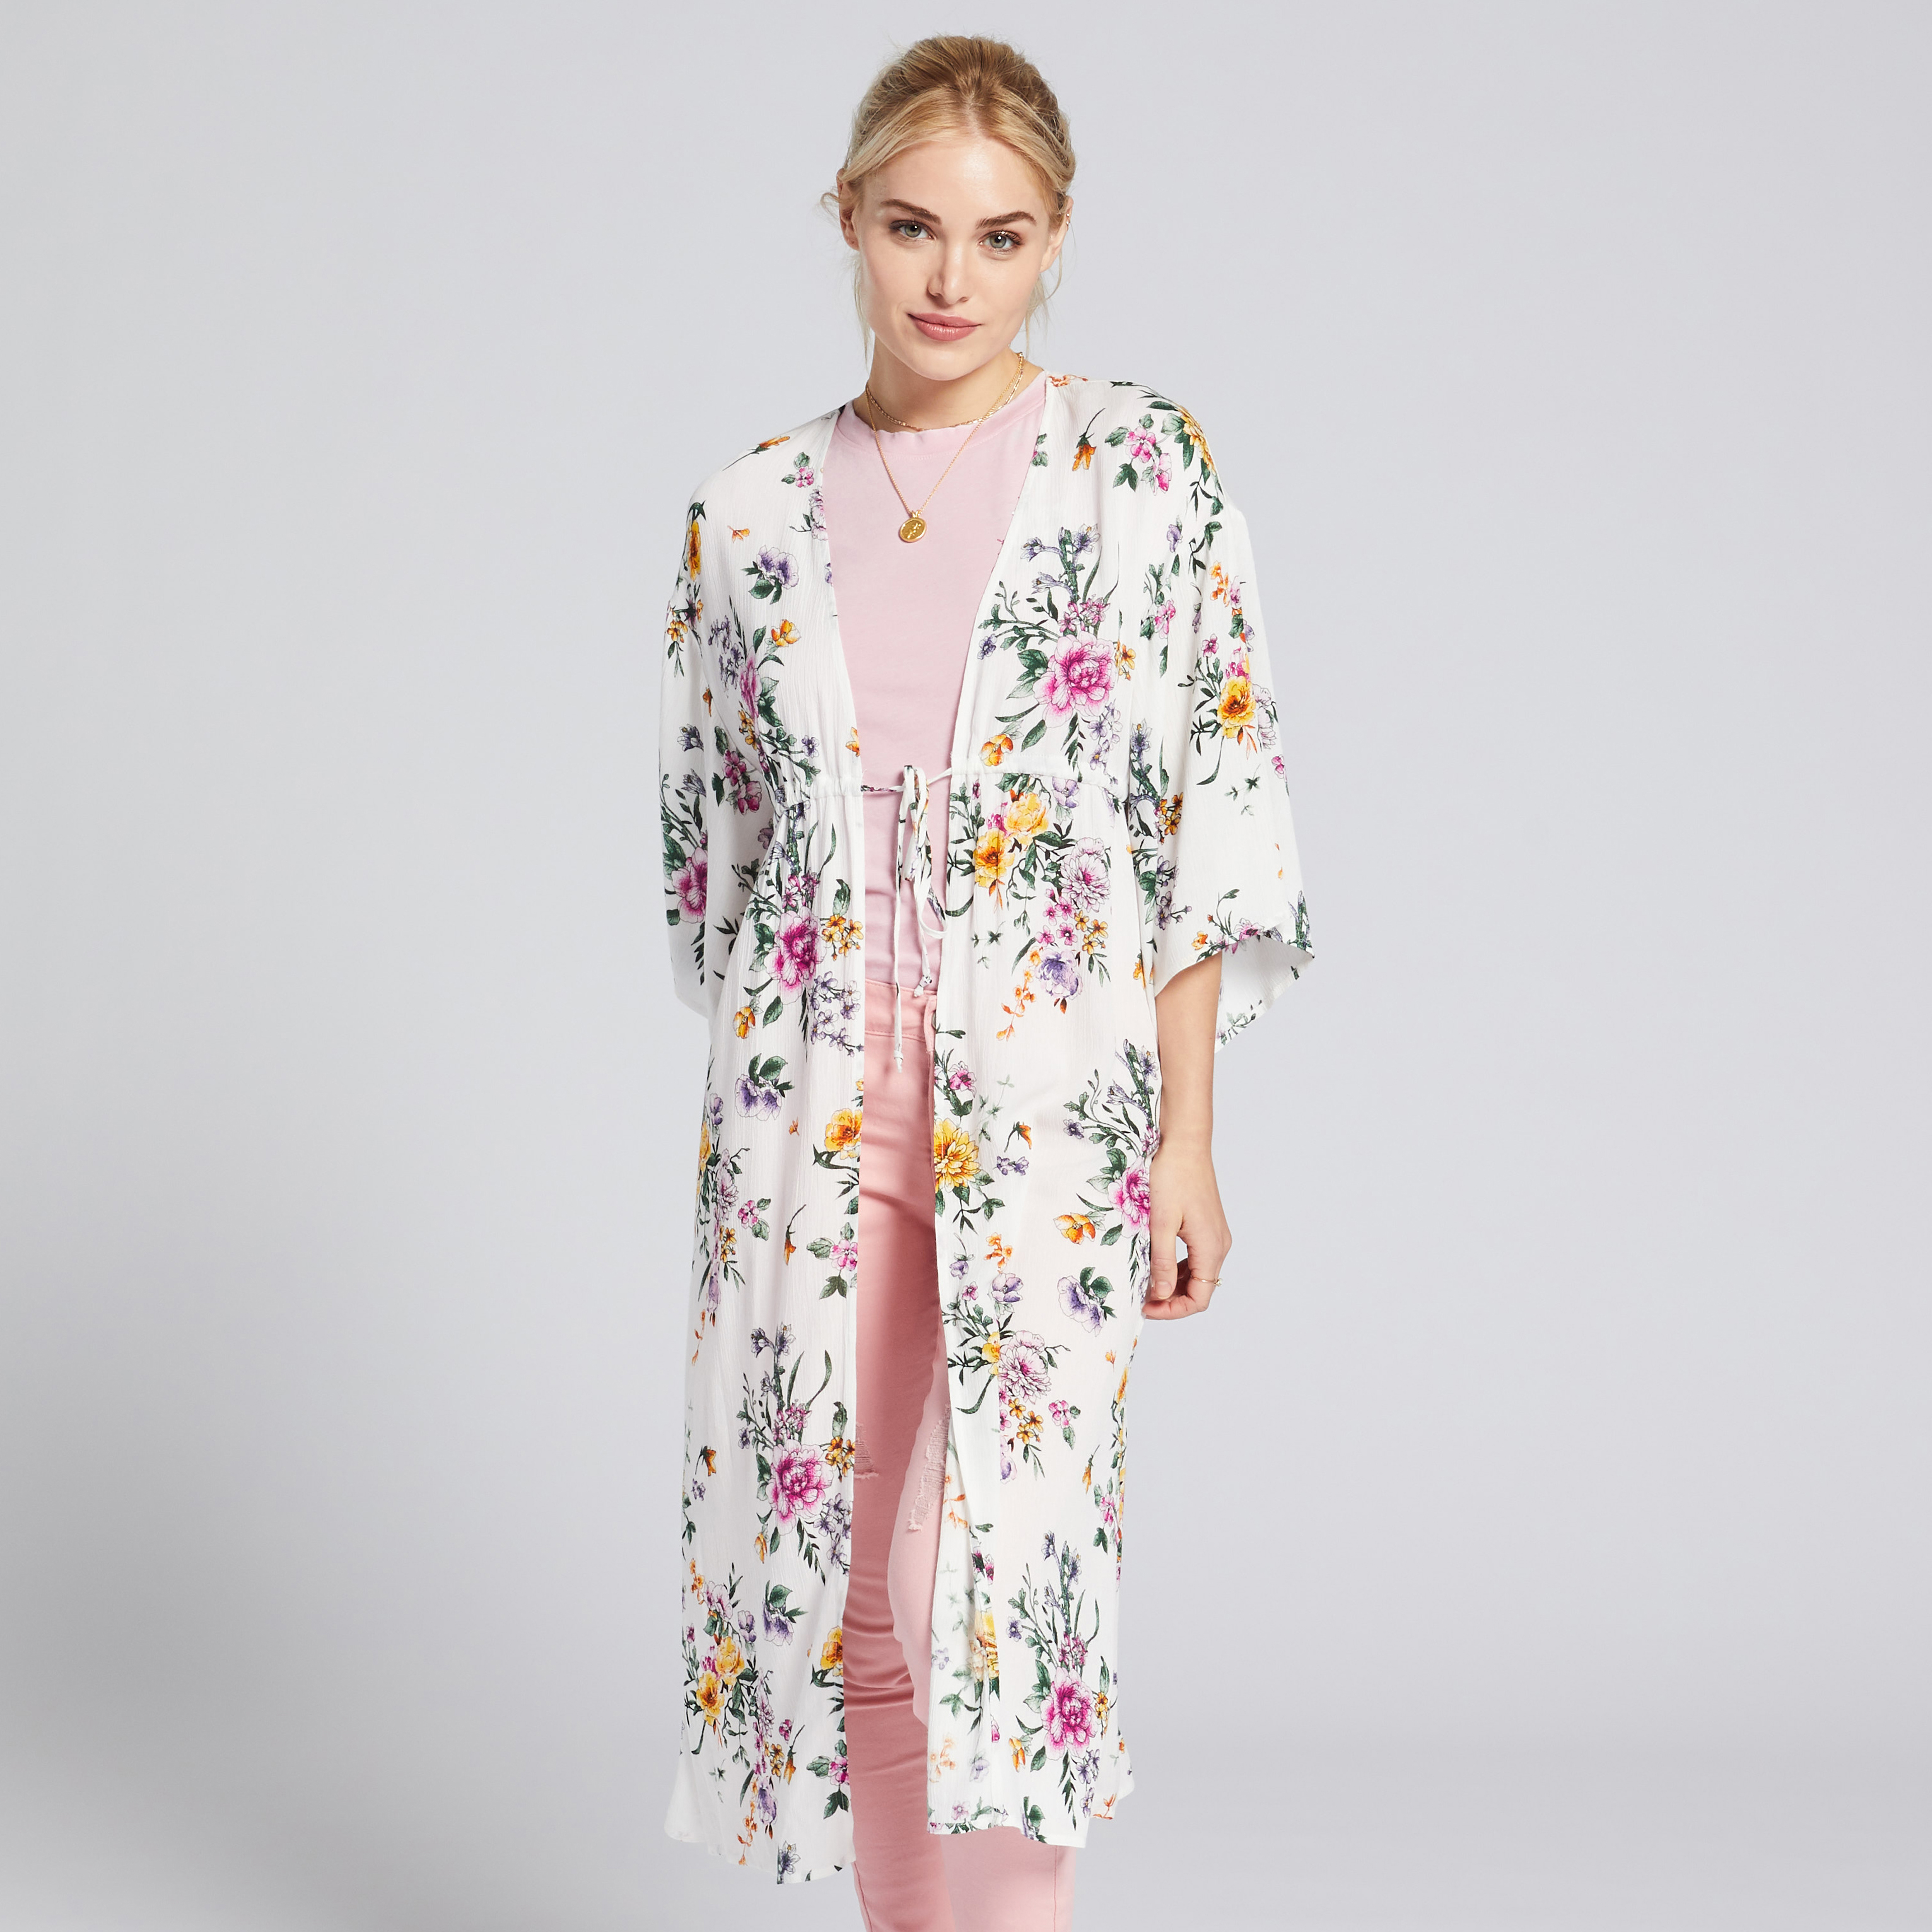 Adam Levine Women's Printed Kimono - White Floral